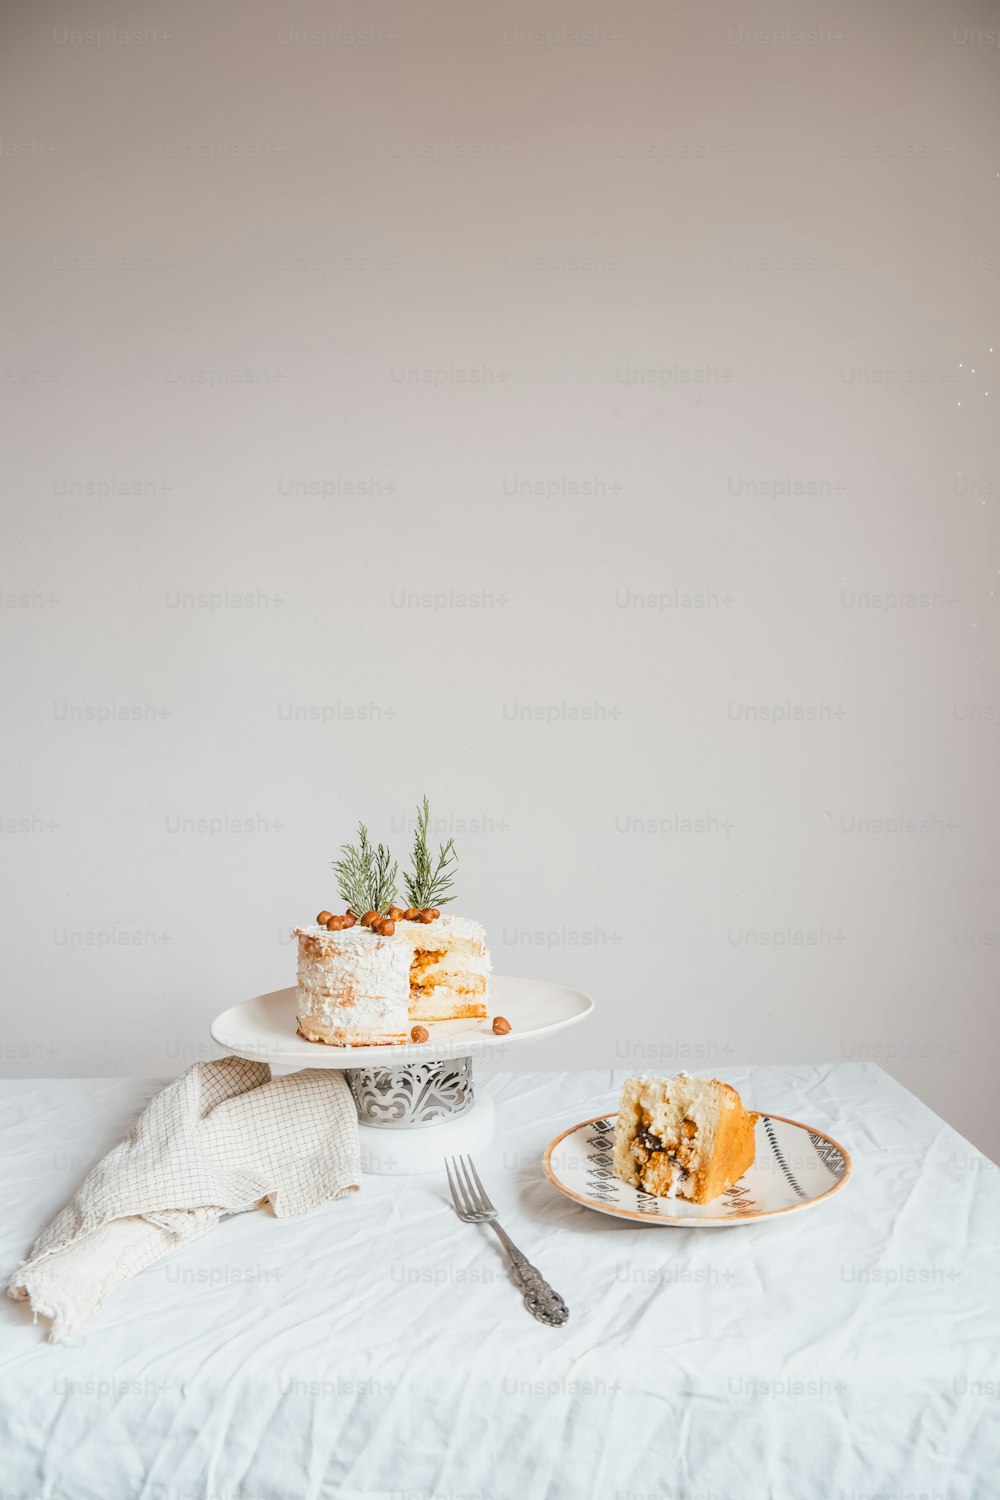 케이크와 포크를 얹은 흰색 테이블